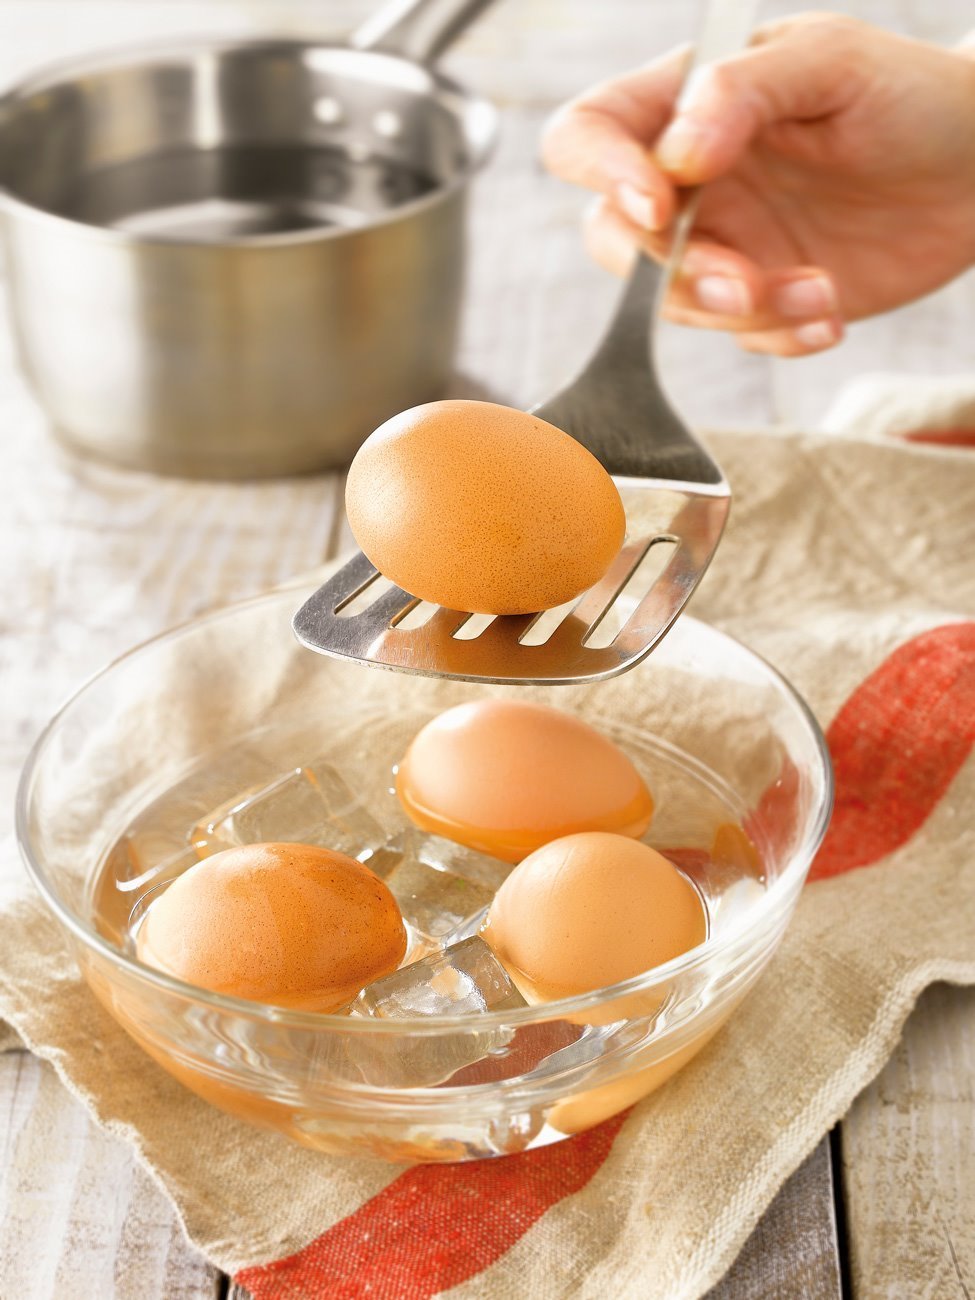 5. Cuece los huevos